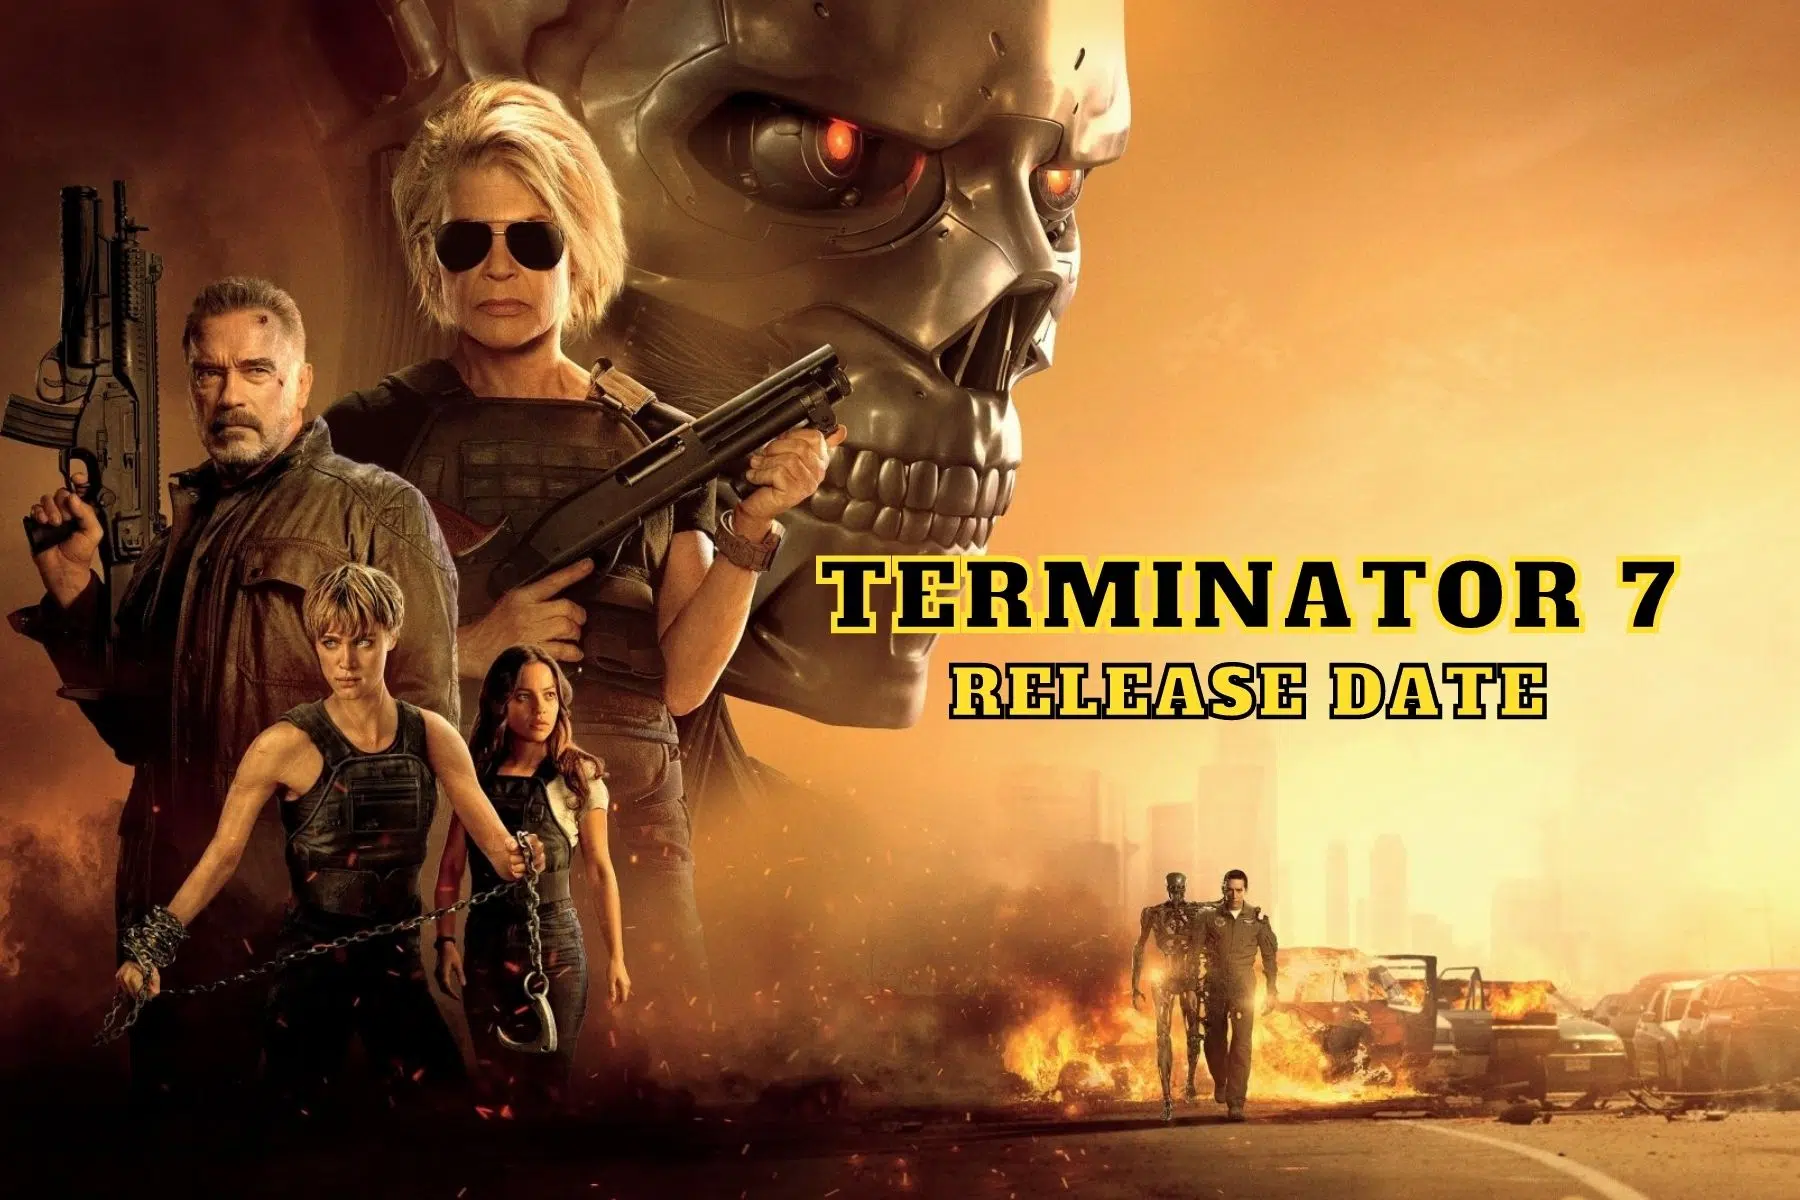 Terminator 7 Release Date, Trailer